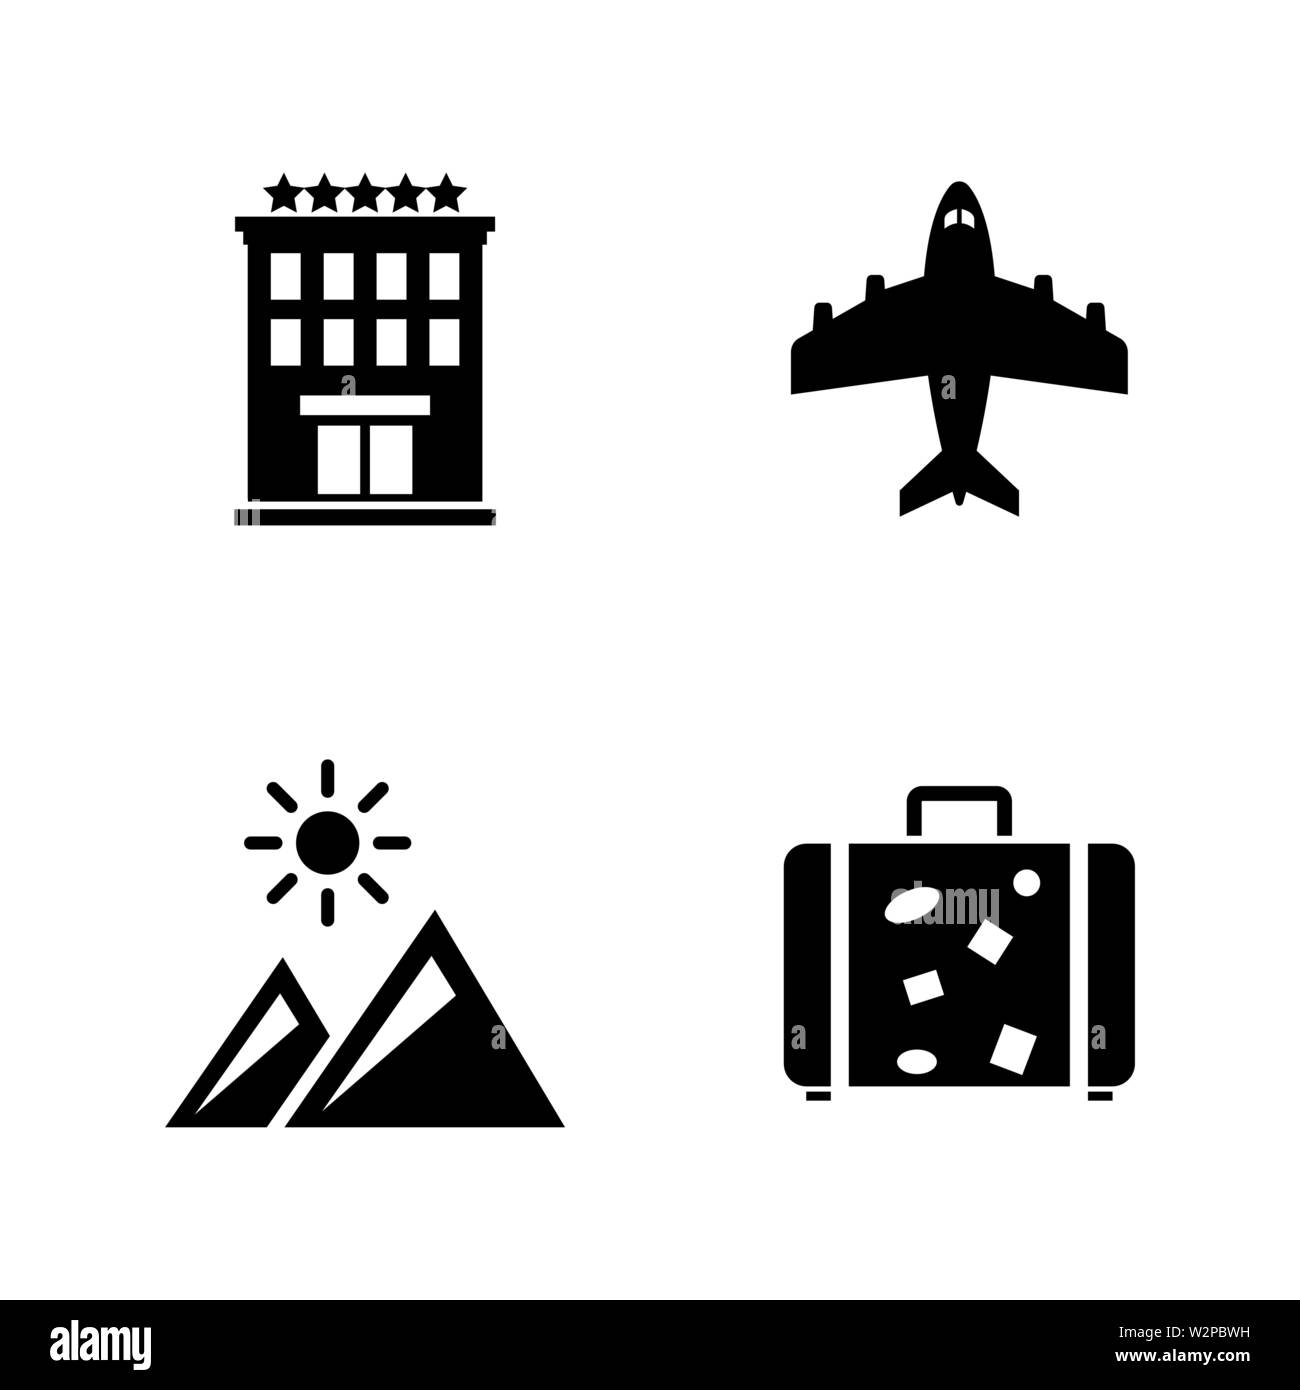 Reisen Urlaub. Einfache ergänzende Vector Icons Set für Video, Mobile Anwendungen, Websites, Print Projekte und ihre Gestaltung. Abbildung schwarz auf weiß Ba Stock Vektor